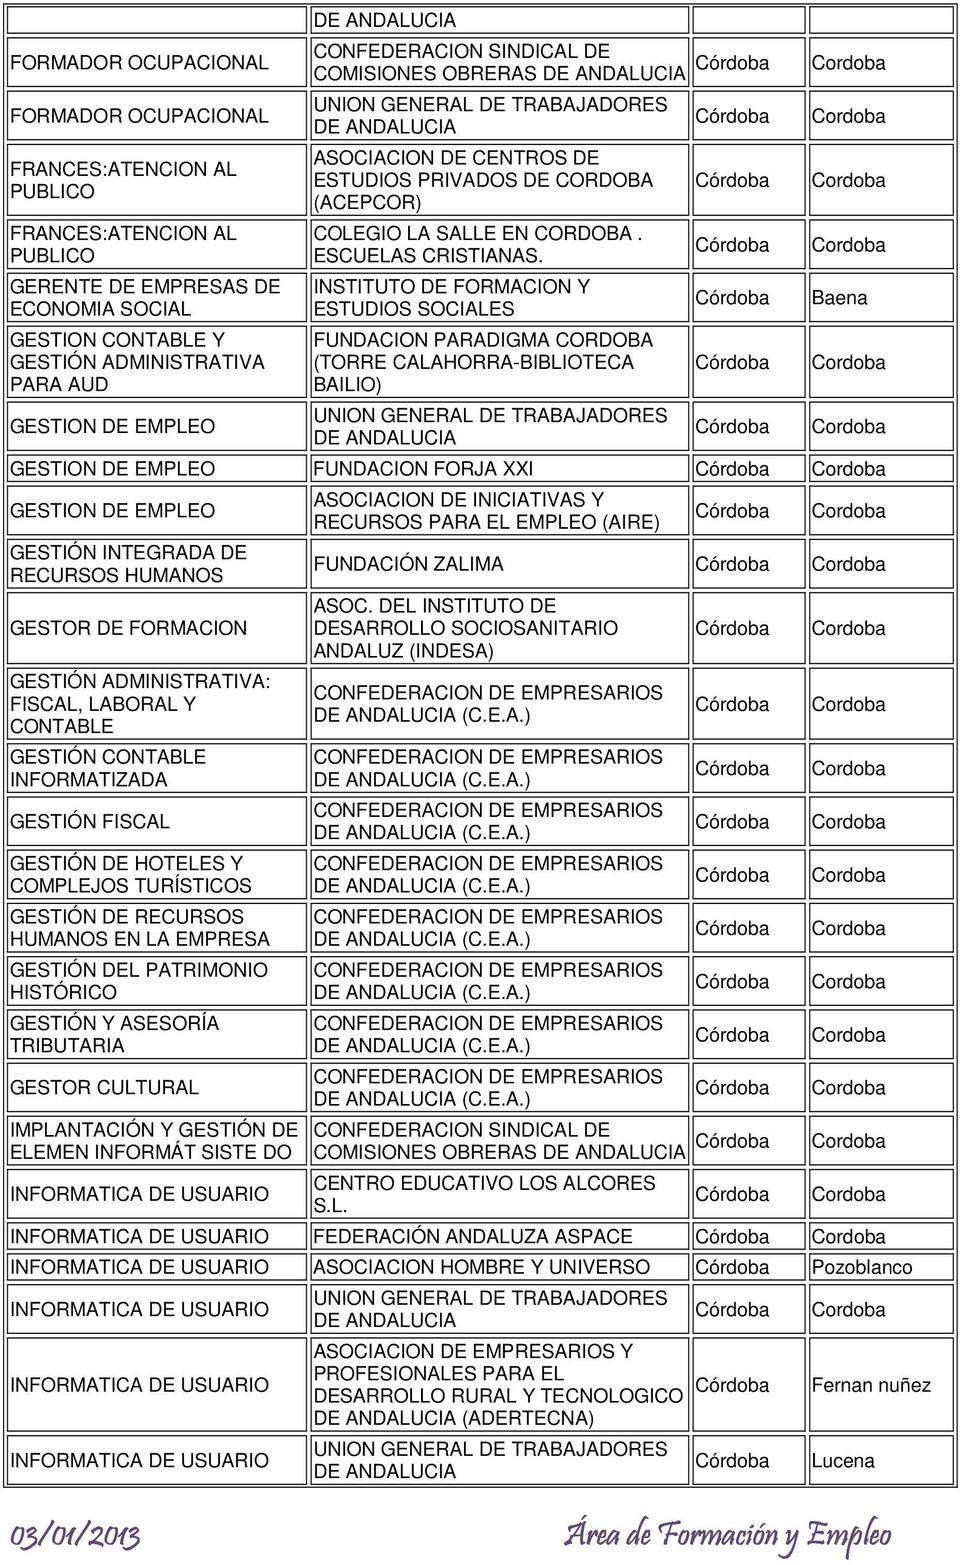 INSTITUTO DE FORMACION Y ESTUDIOS SOCIALES FUNDACION PARADIGMA CORDOBA (TORRE CALAHORRA-BIBLIOTECA BAILIO) GESTION DE EMPLEO FUNDACION FORJA XXI GESTION DE EMPLEO GESTIÓN INTEGRADA DE RECURSOS